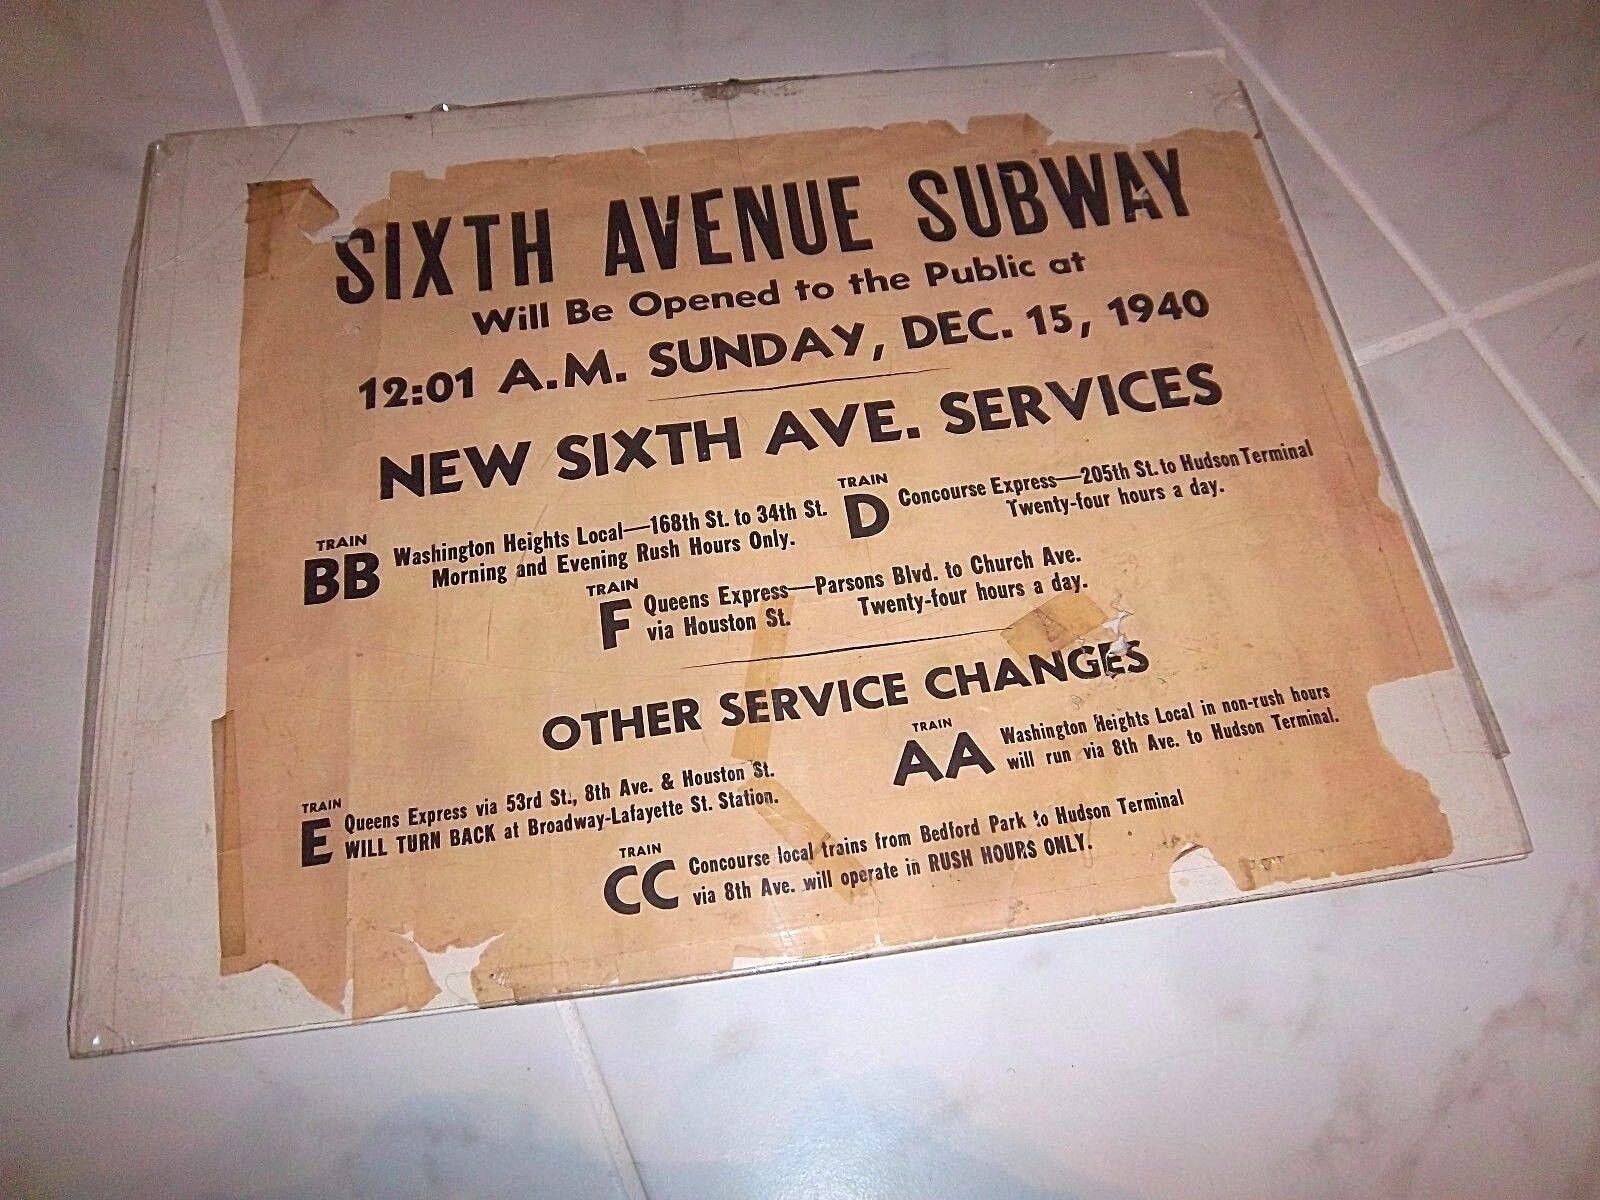 NY NYC SIXTH AVENUE SUBWAY SIGN 1940 EXPRESS HUDSON TERMINAL BB D F E AA CC LINE